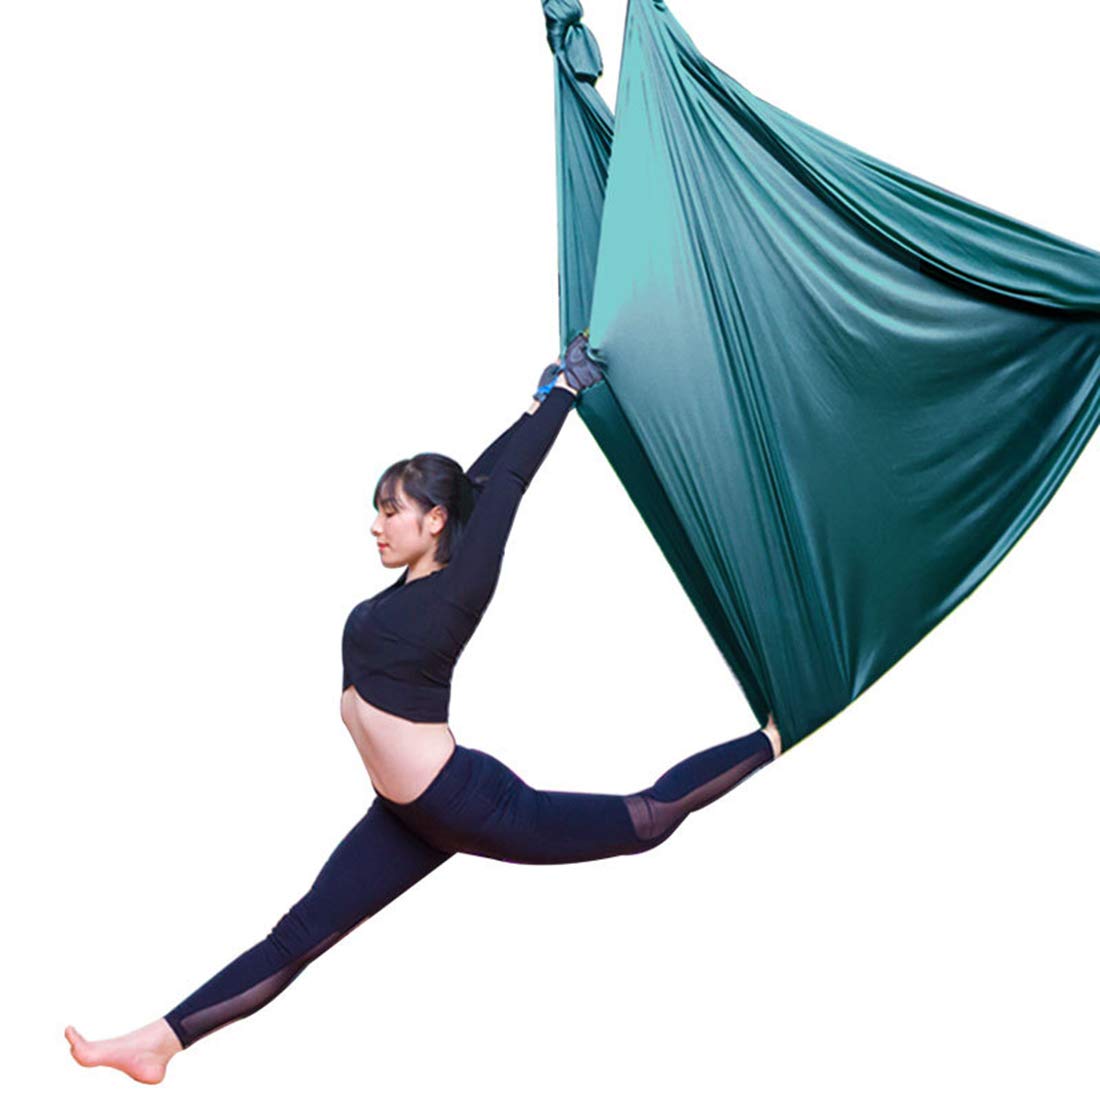 LWKBE Yoga Hammock 5.5 Yards Aerial Silk Swing Set